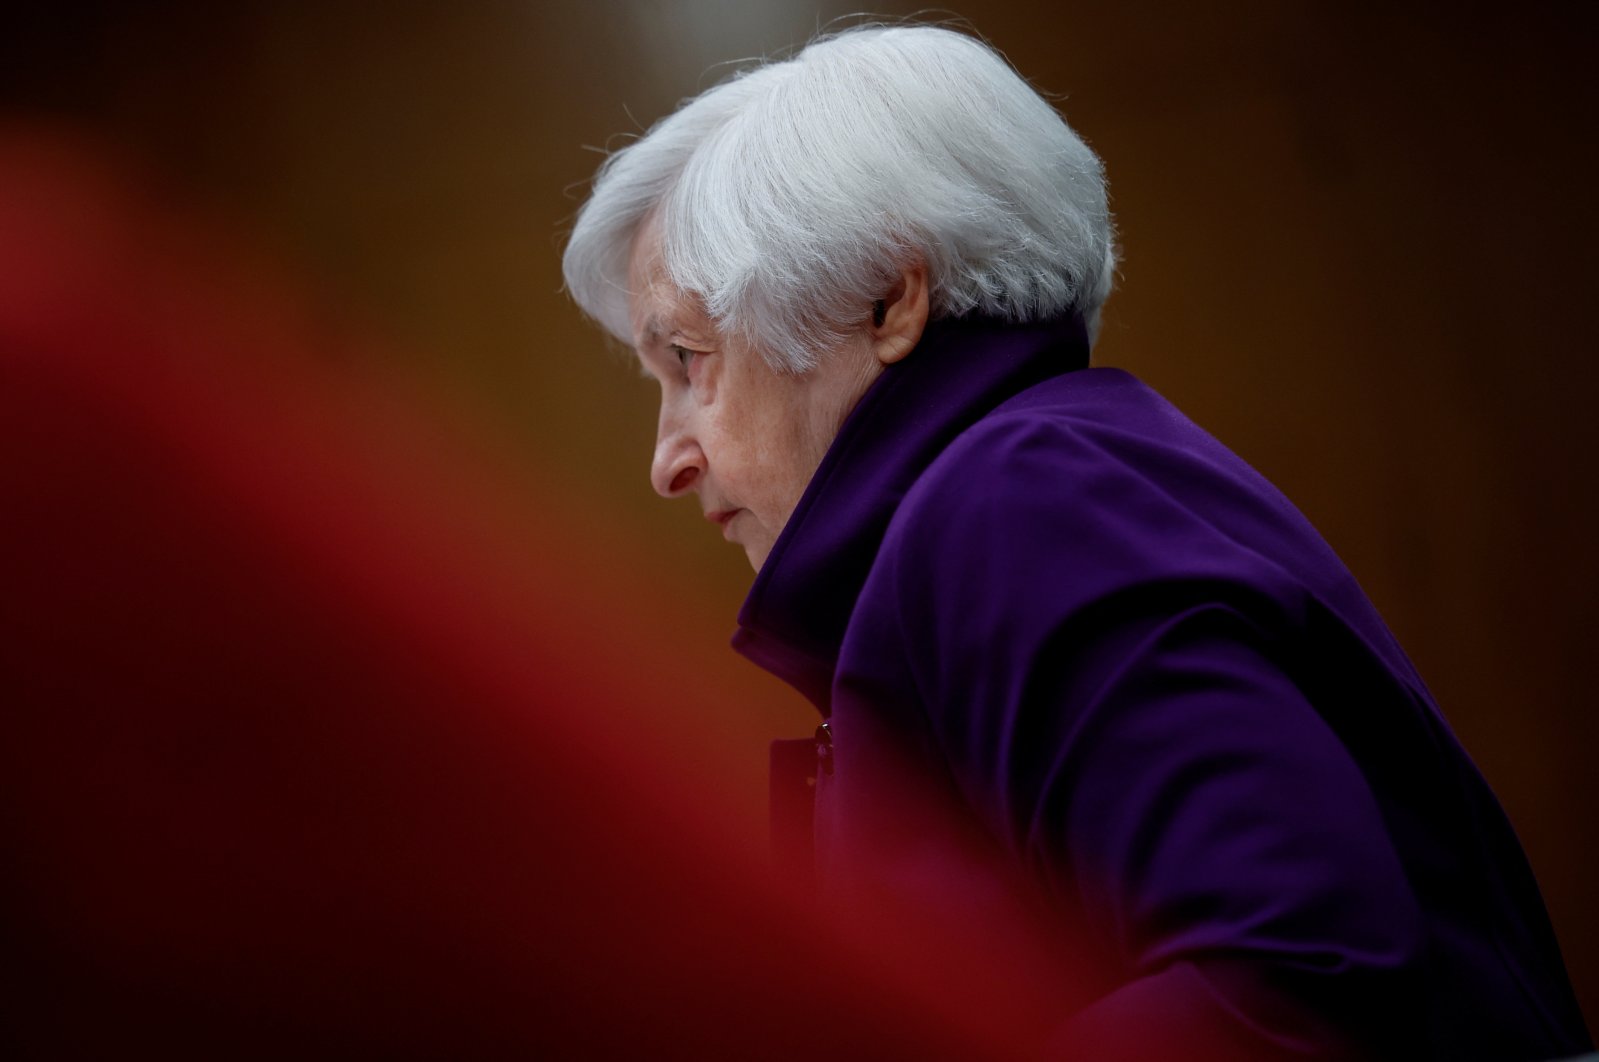 Pengalaman puluhan tahun Yellen diuji oleh kegagalan bank, penyelamatan